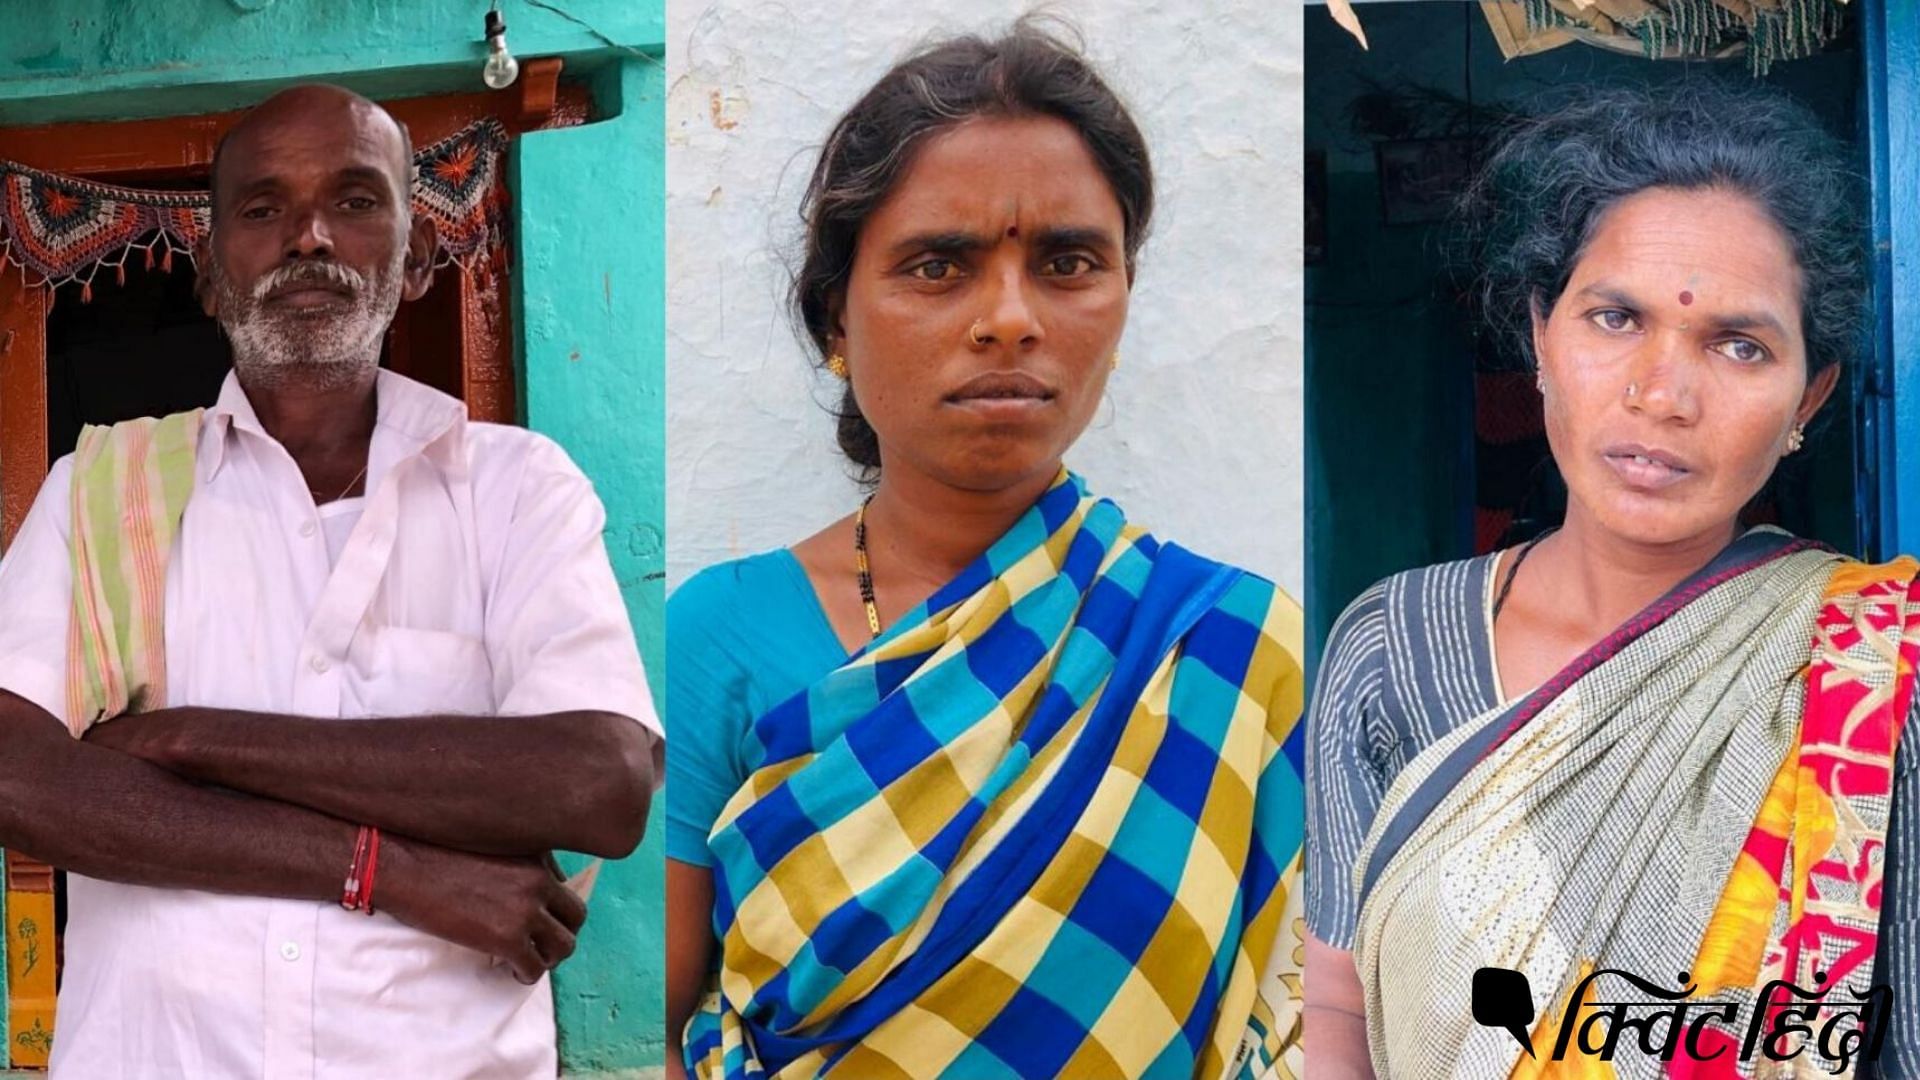 बाएं से- जोलू शिवा का पिता जोलू राजप्पा, जोलू नवीन की मां लक्ष्मी और चिंताकुंता चेन्नाकेशावुलु की मां जयम्मा